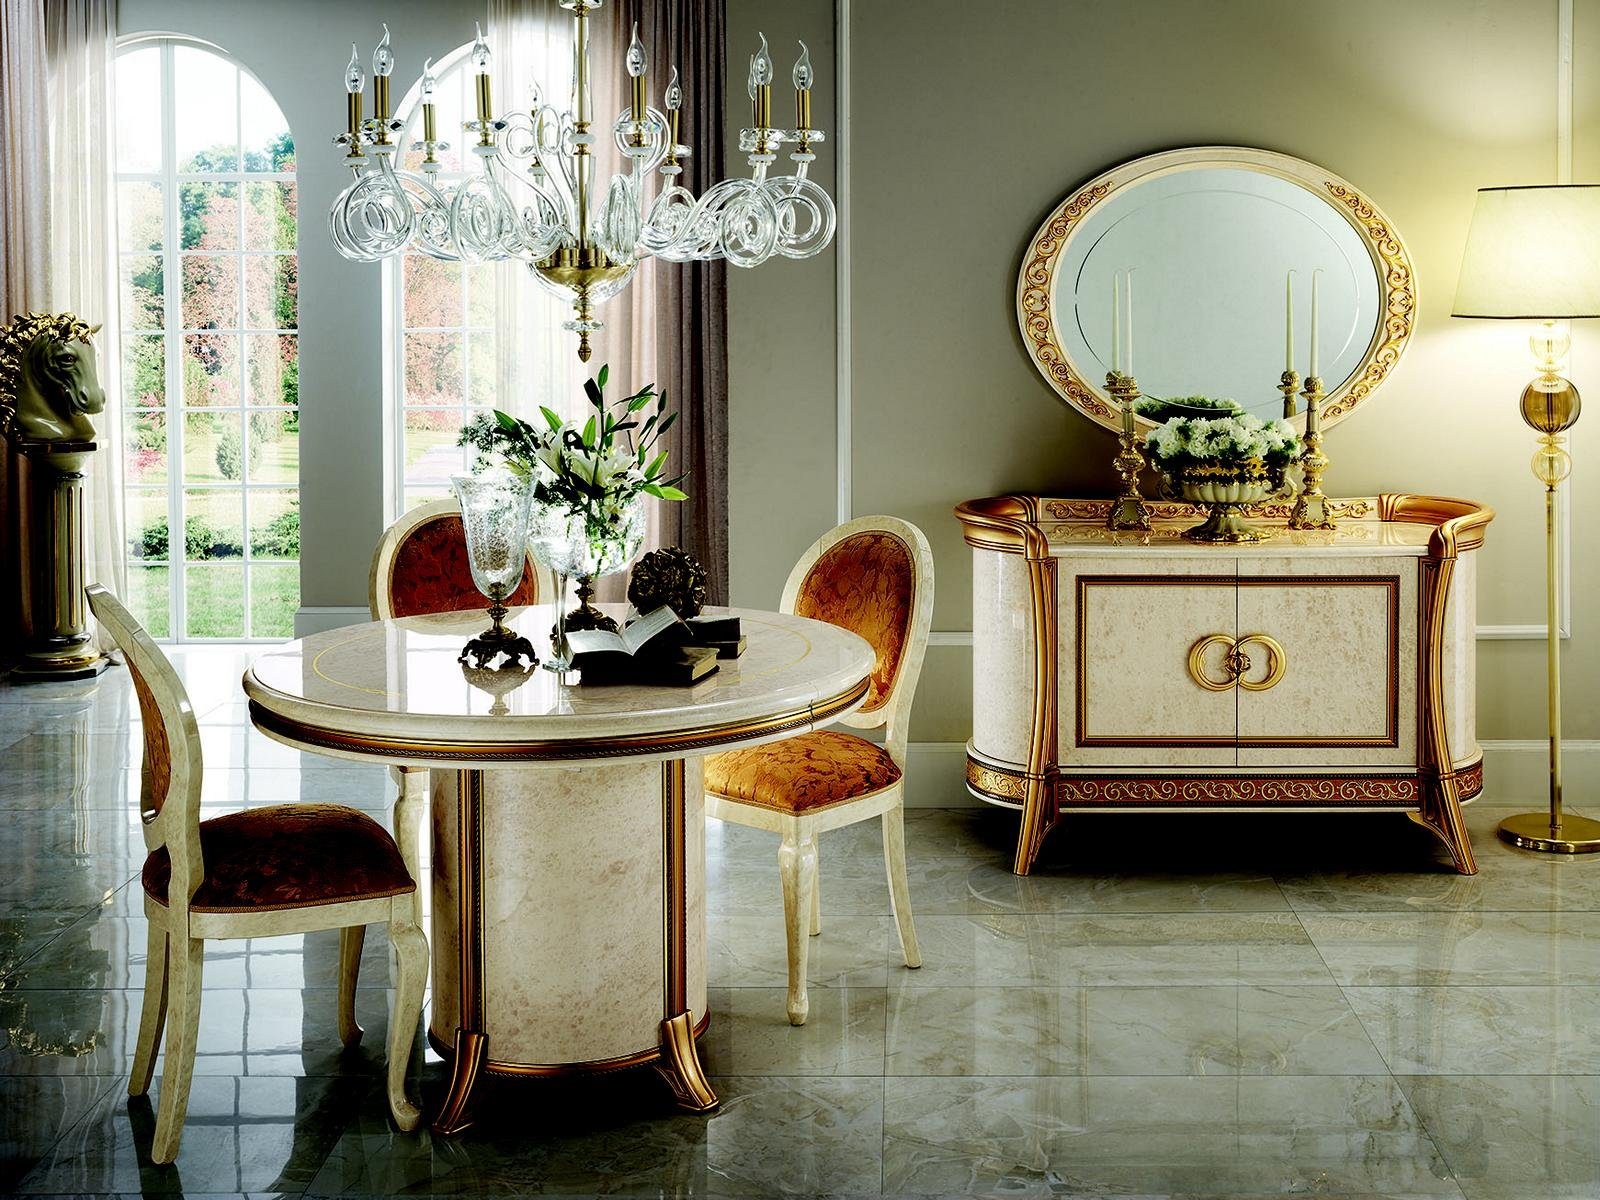 JVmoebel Essgruppe, arredoclassic™ Luxus Klasse Möbel Esszimmer Rund Tisch Esstisch + 4 Stühle Neu